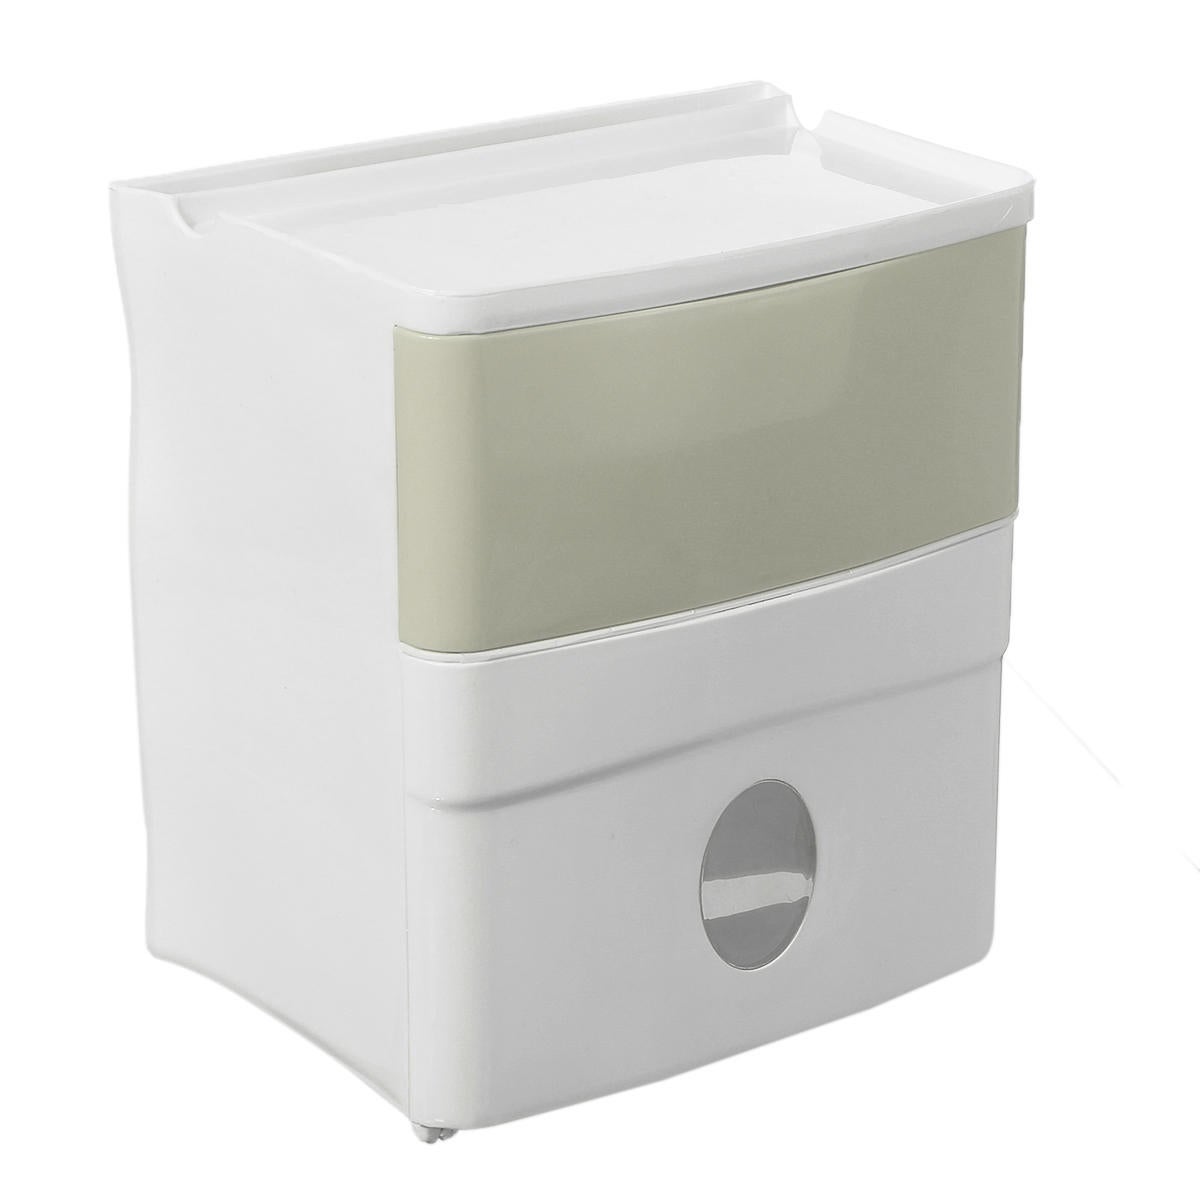 Bathroom Toilet Paper Holder Tissue Kitchen Wall Mounted Storage Organiser Box